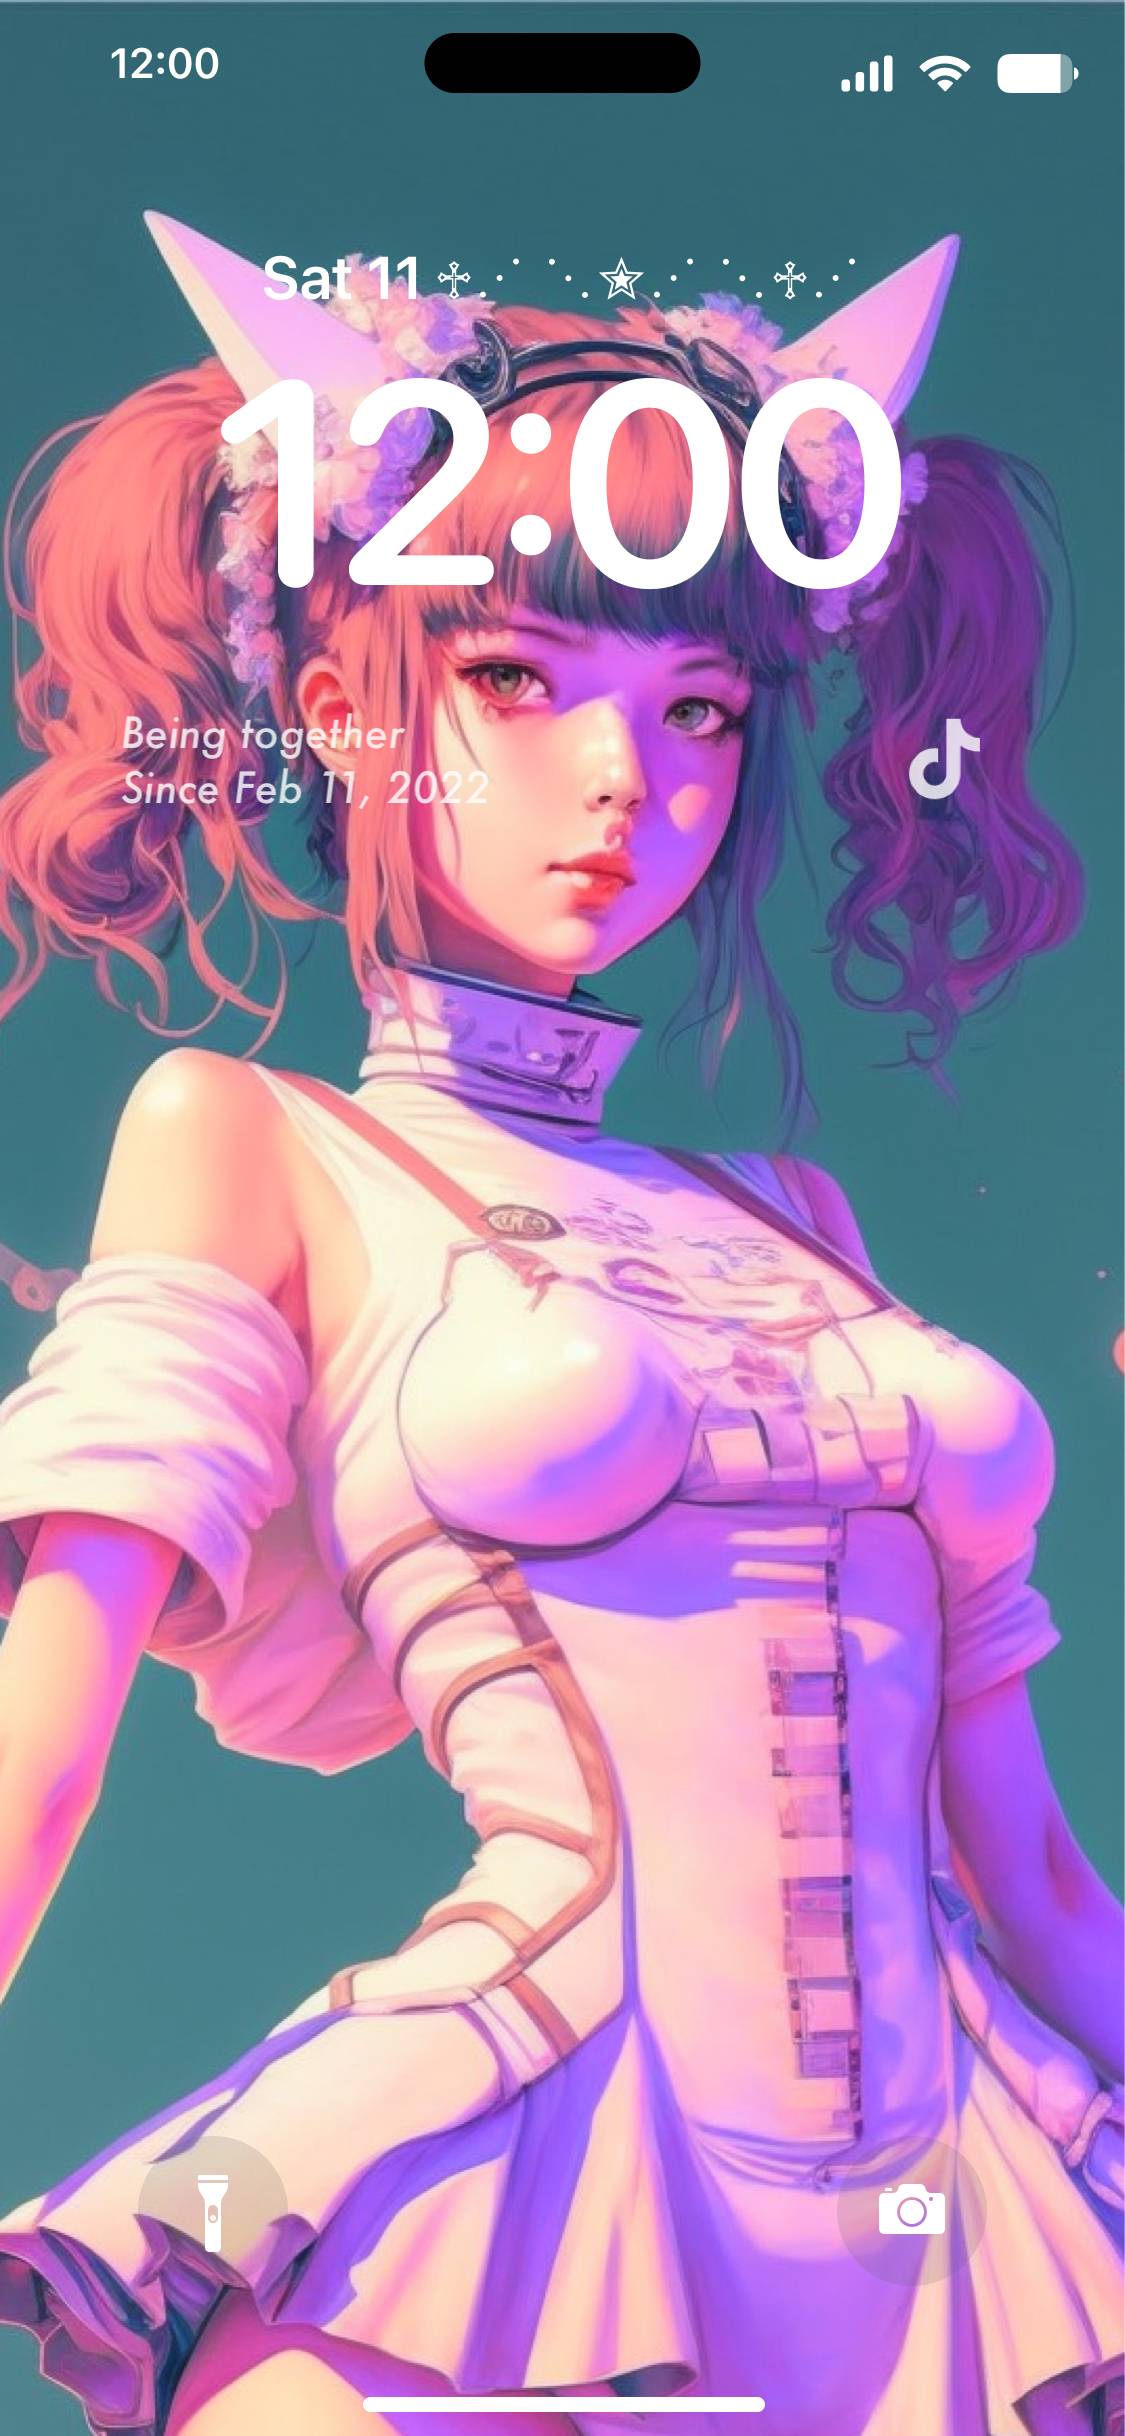 Cyberpunk girl lock screenロック画面[6J3XZiCvg7JlsTzNcMWe]